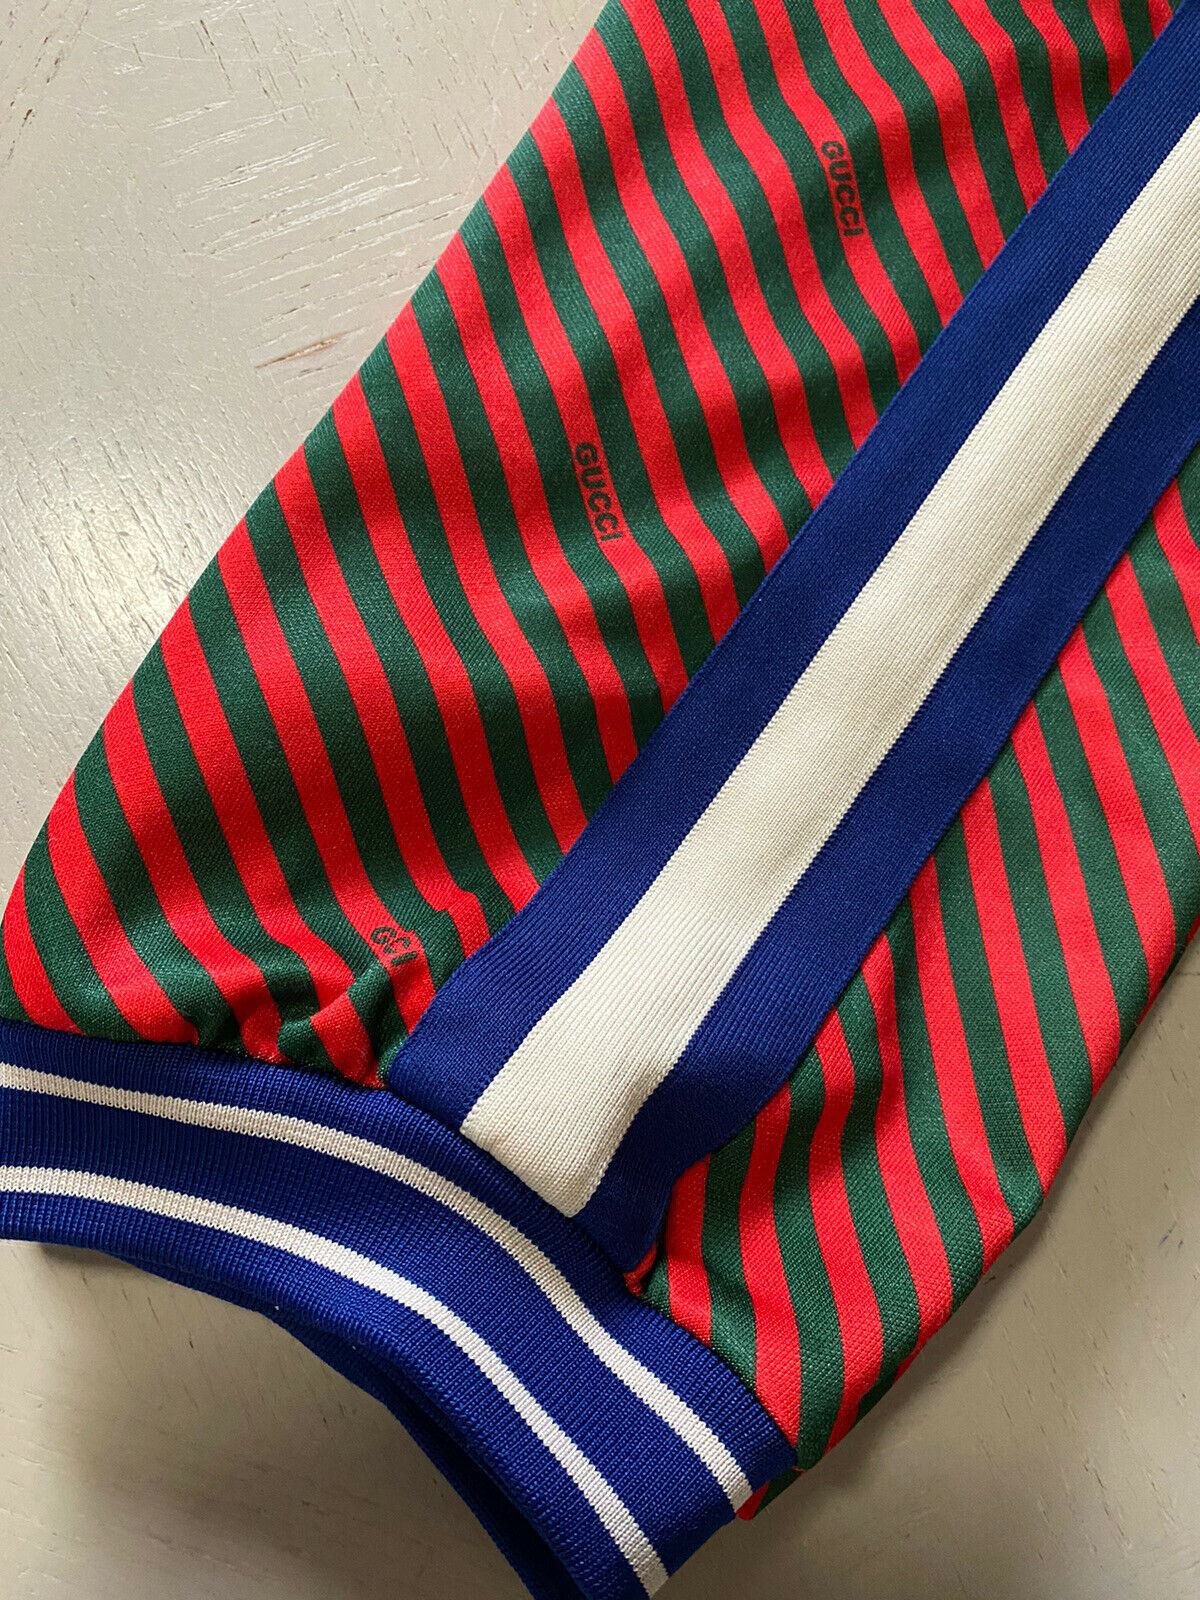 Neue Herren-Jogginghose von Gucci für 1.500 $ in Blau/Rot/Grün, Größe XXL, Italien